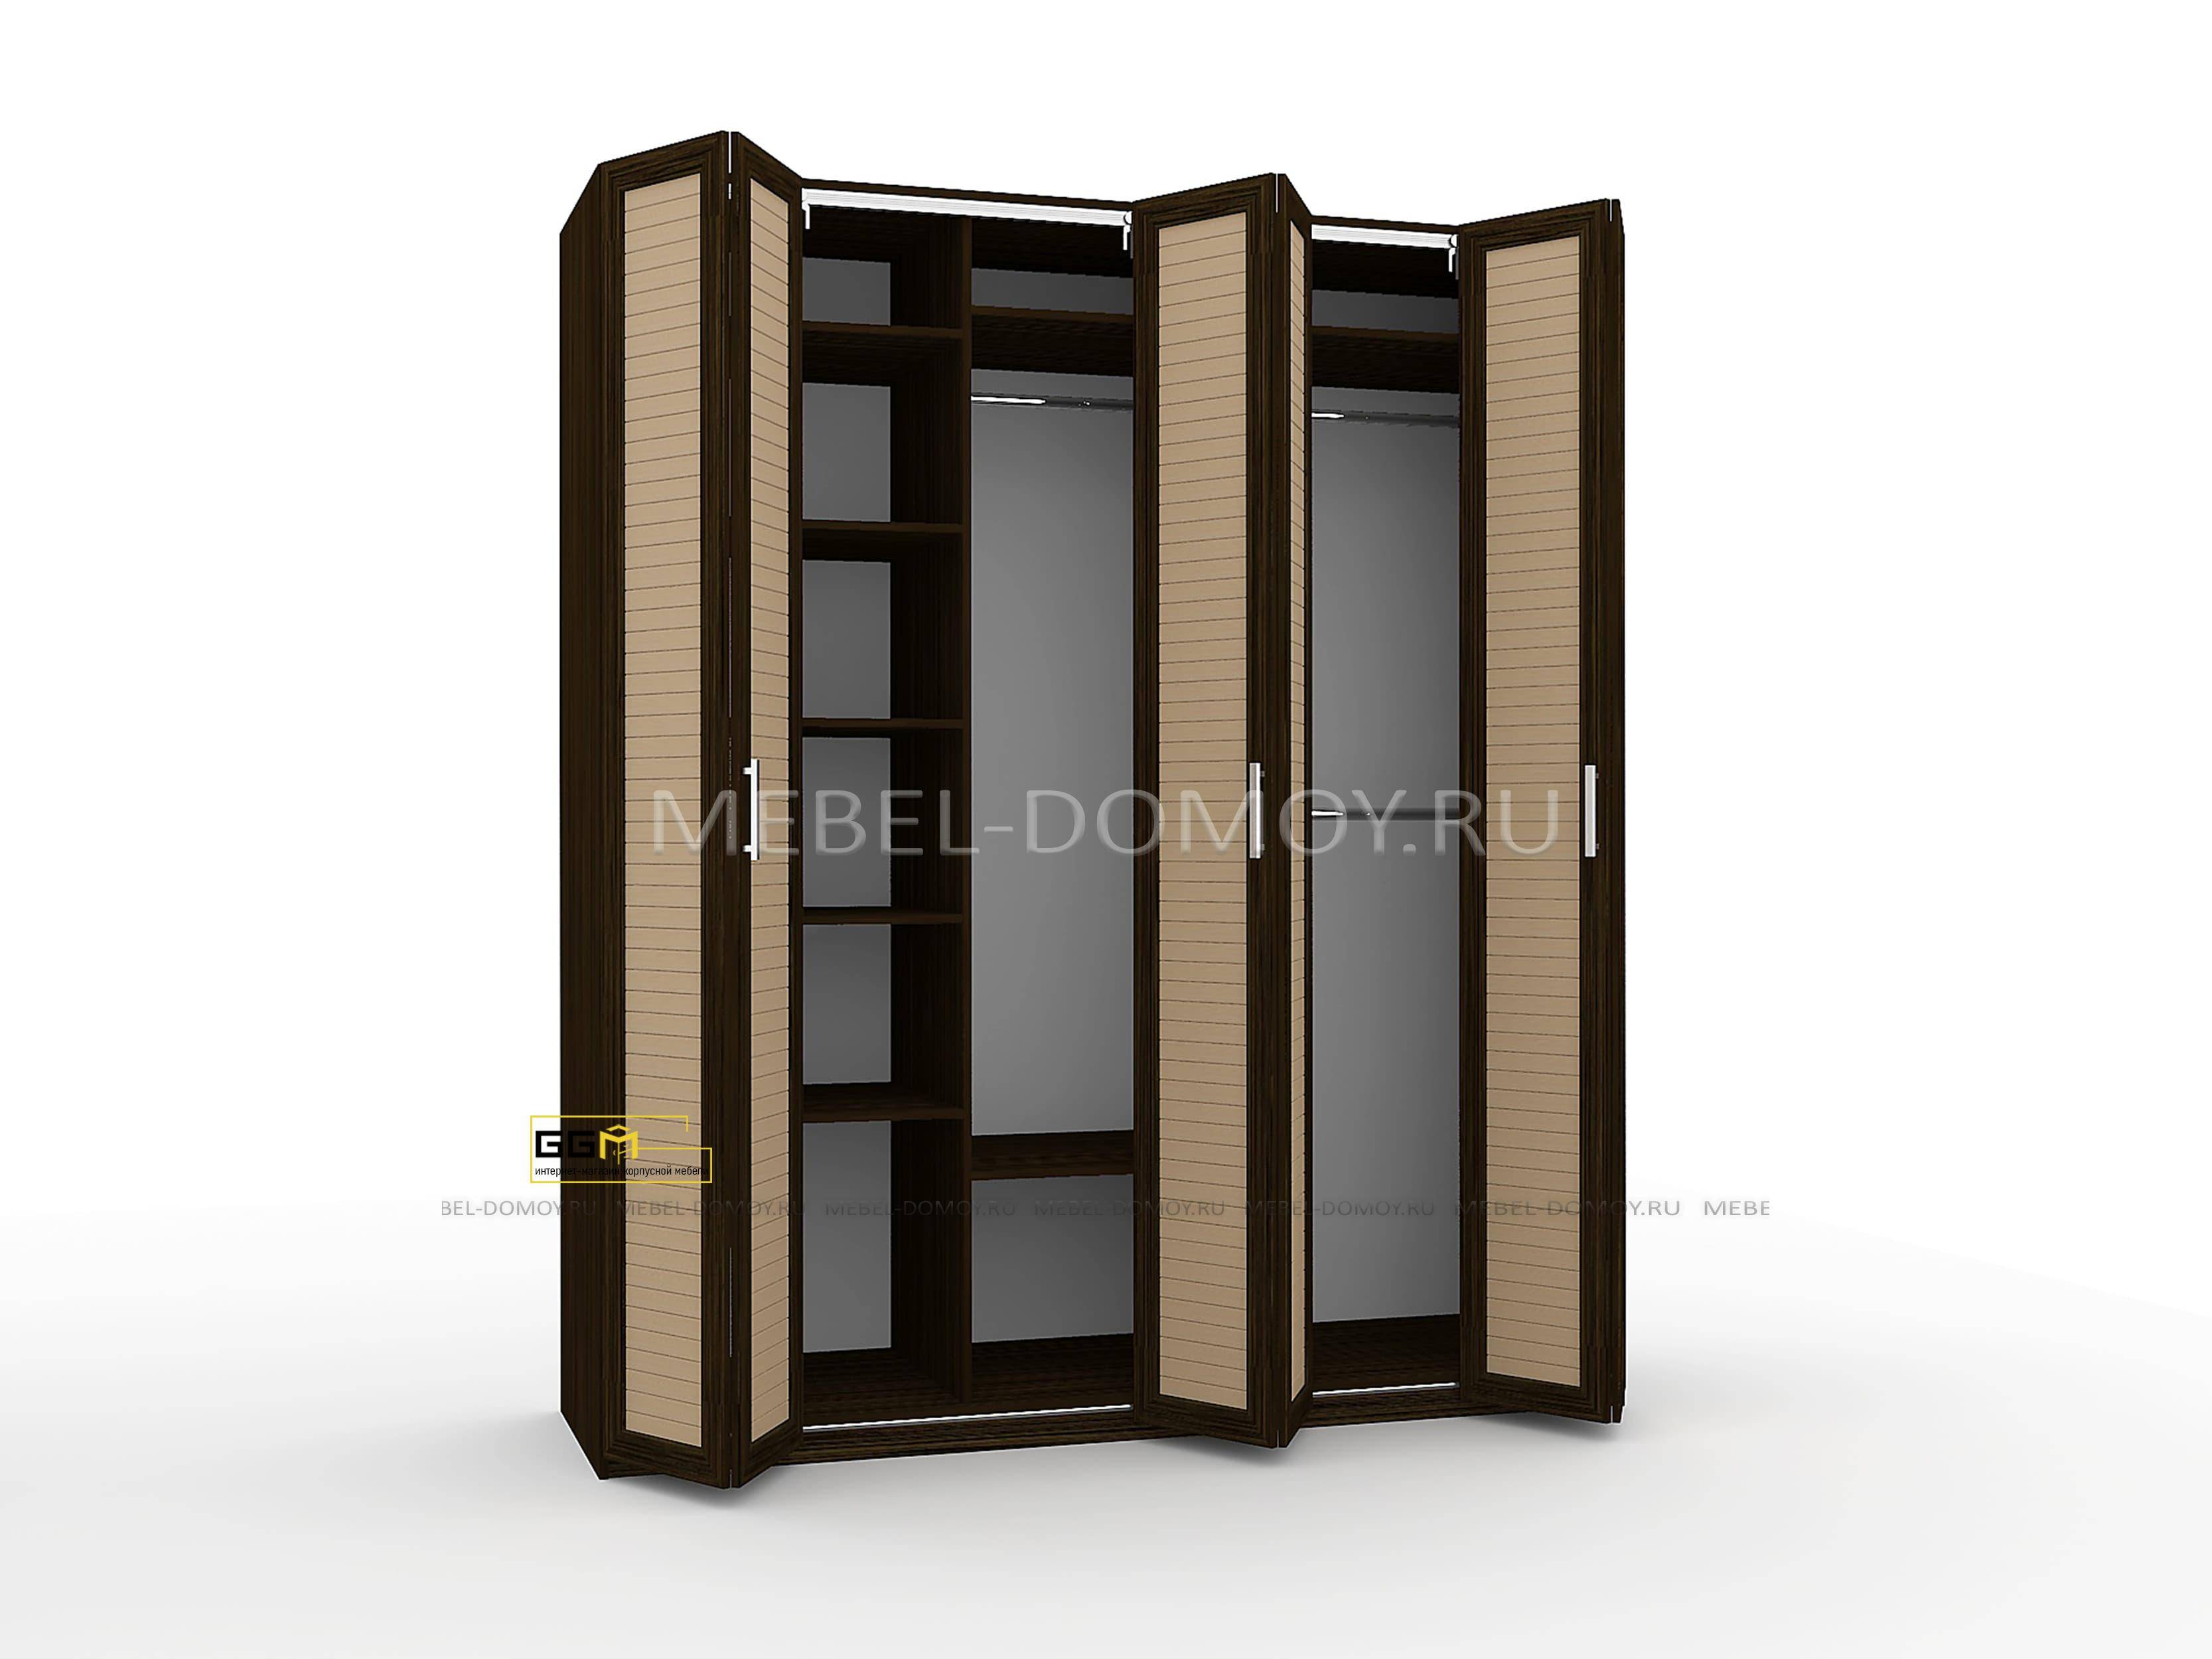 Шкафы с дверями «гармошкой»: модели со складными дверями с механизмом «книжка» и зеркалом